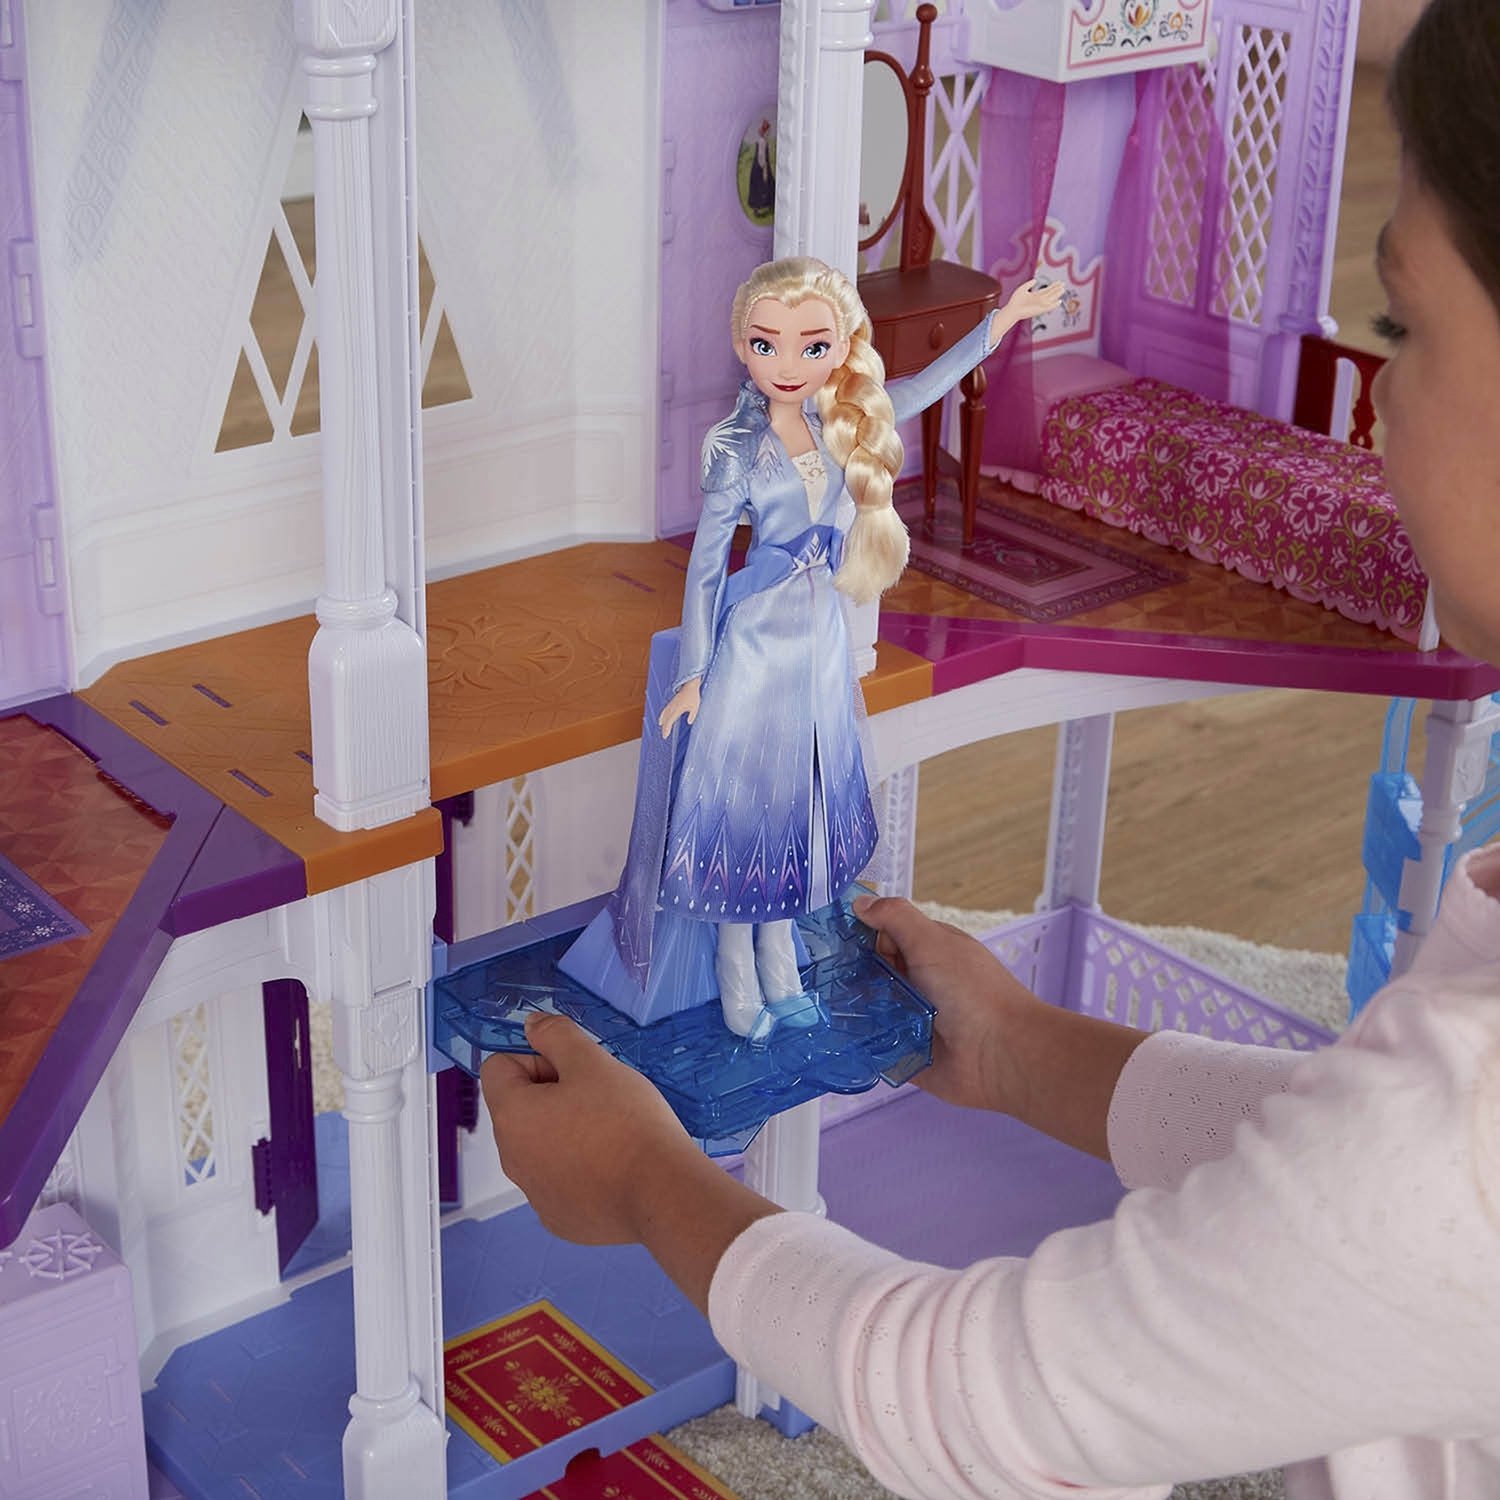 Набор игровой Disney Princess Холодное сердце 2 Замок Эренделла E5495EU4